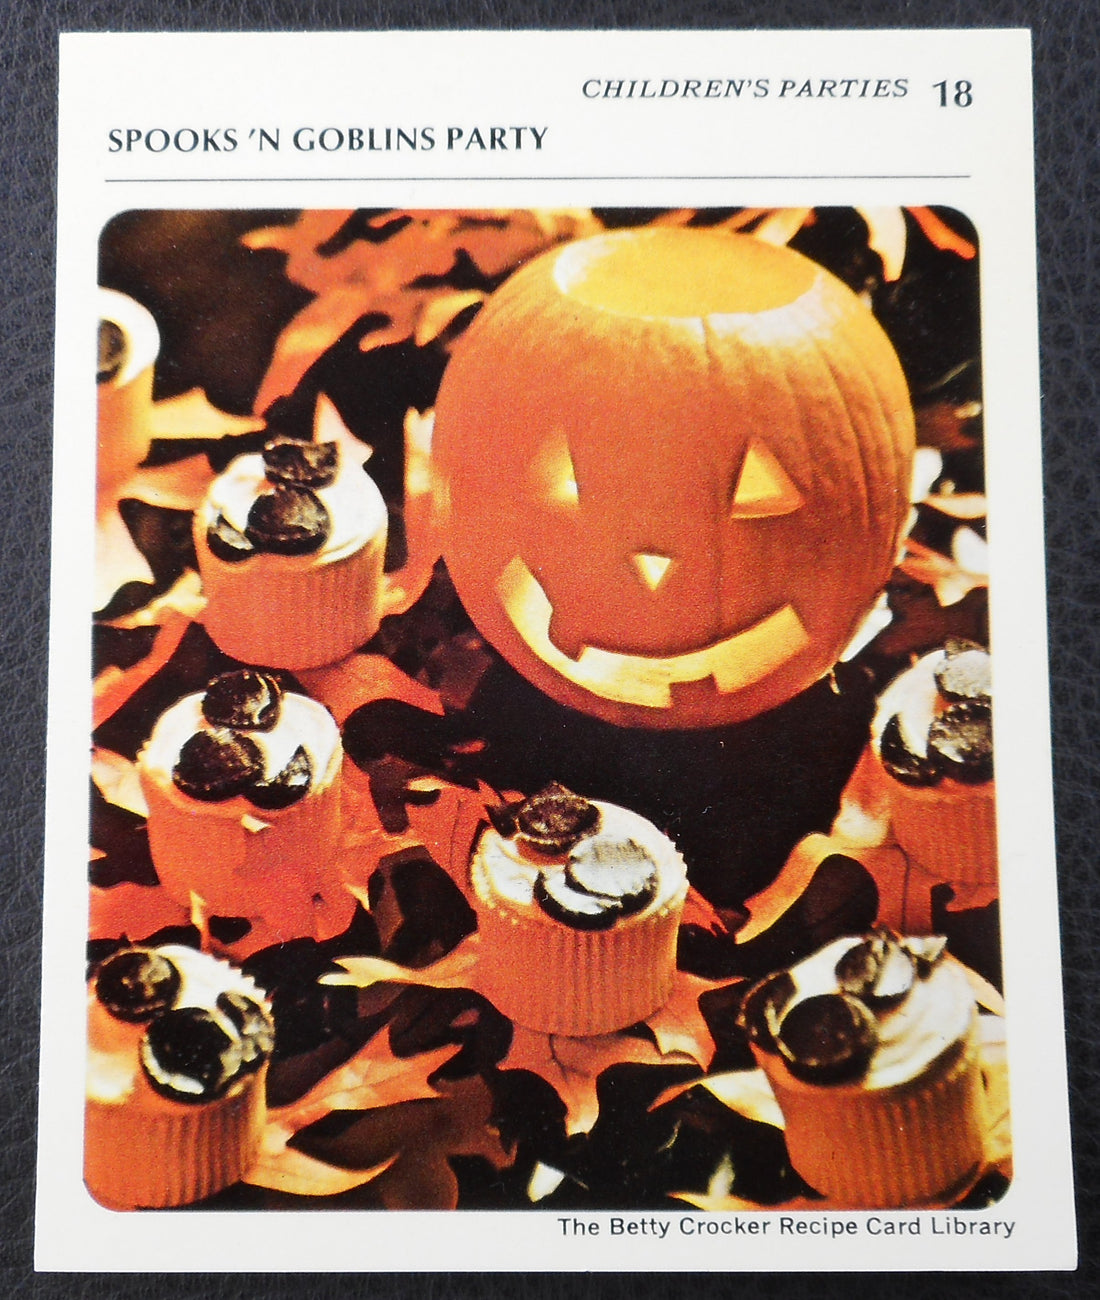 1971 Betty Crocker Recipe Card - Spooks 'N Goblins Party